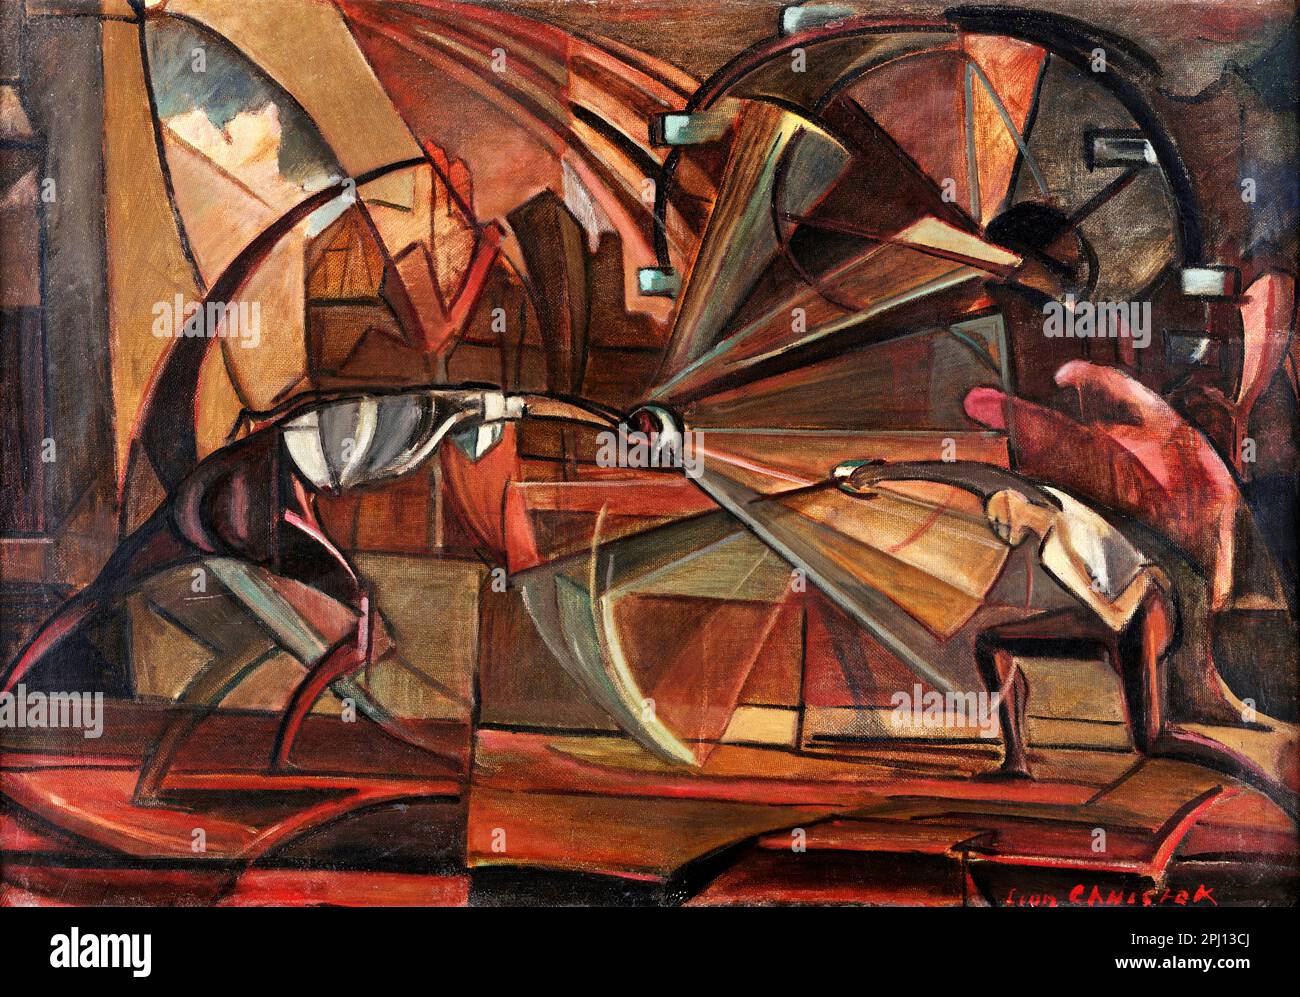 Match d'escrime de l'artiste polonais Leon Chwistek (1884-1944), huile sur carton, 1919 Banque D'Images